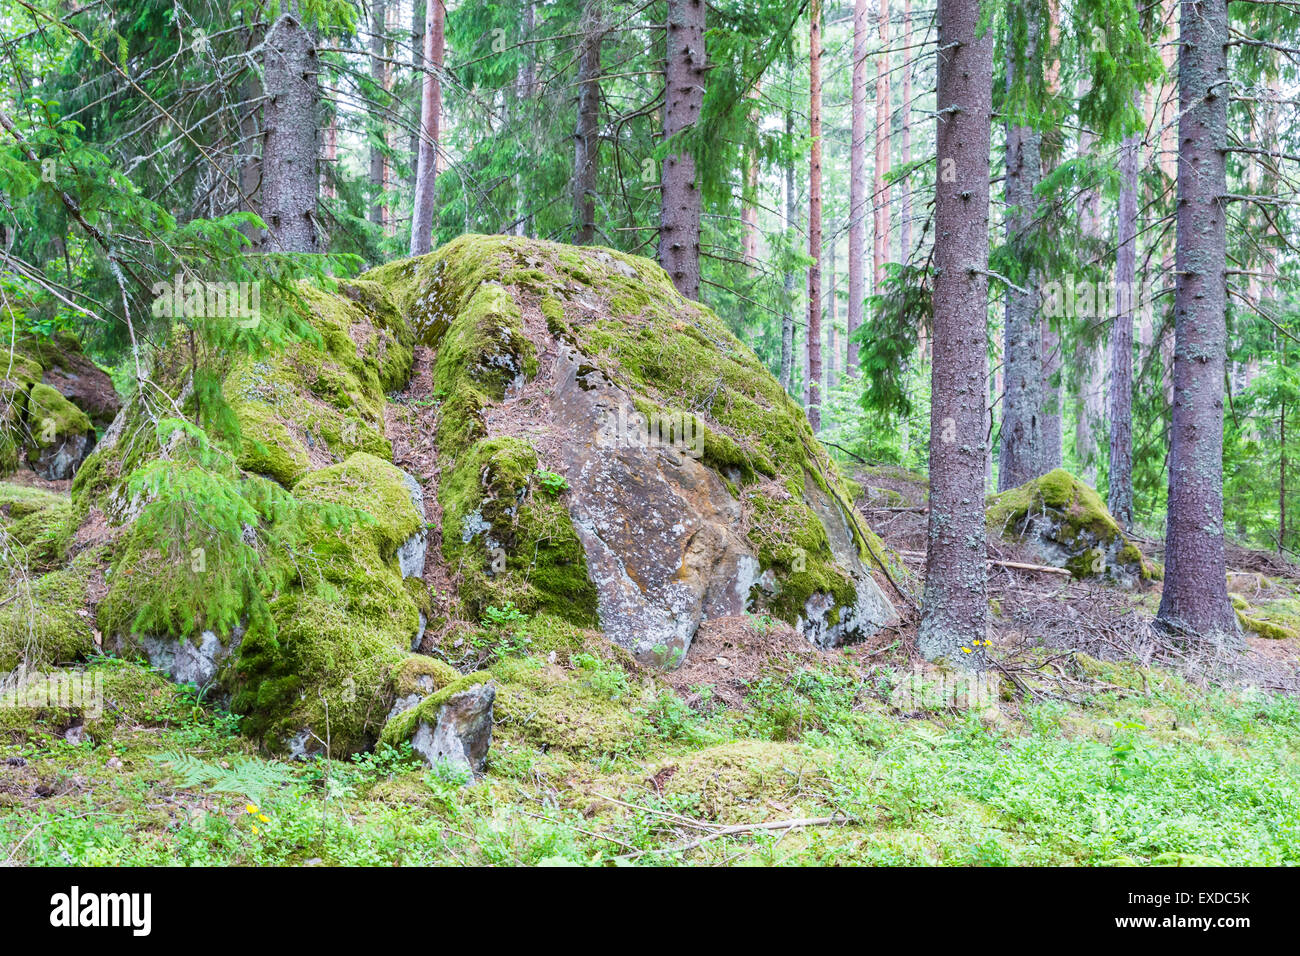 [Image: large-massive-boulder-in-pine-forest-ove...EXDC5K.jpg]